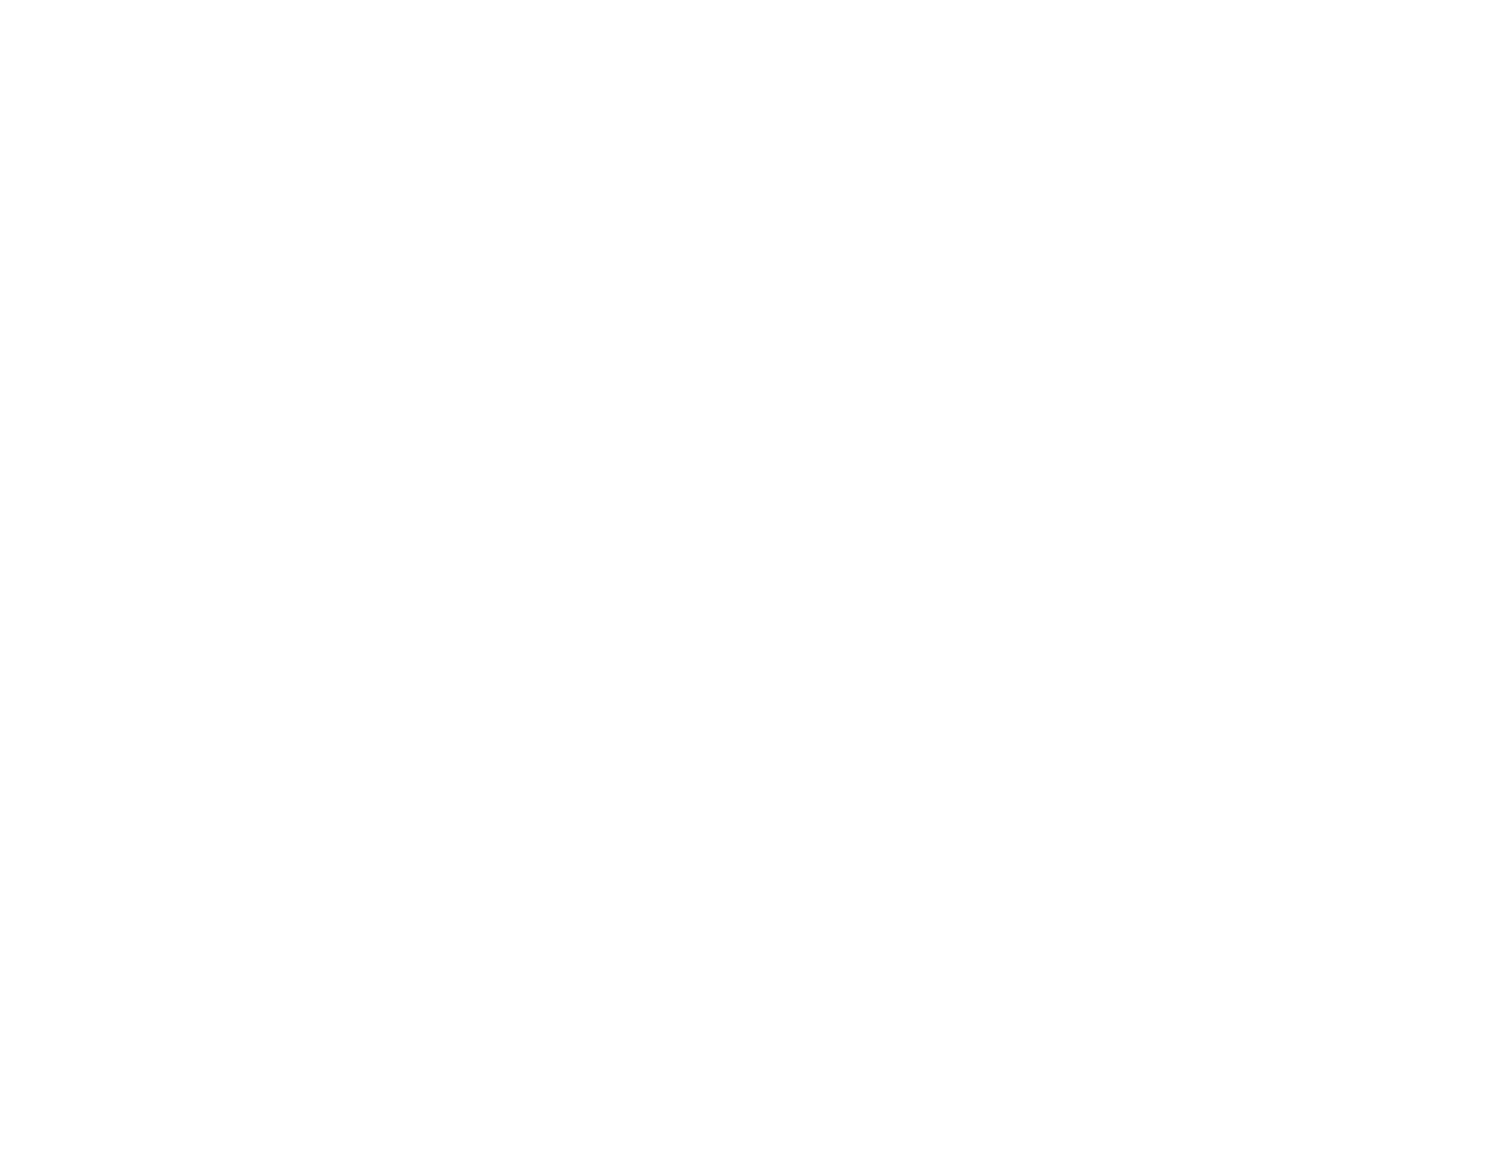 Amy Colvin